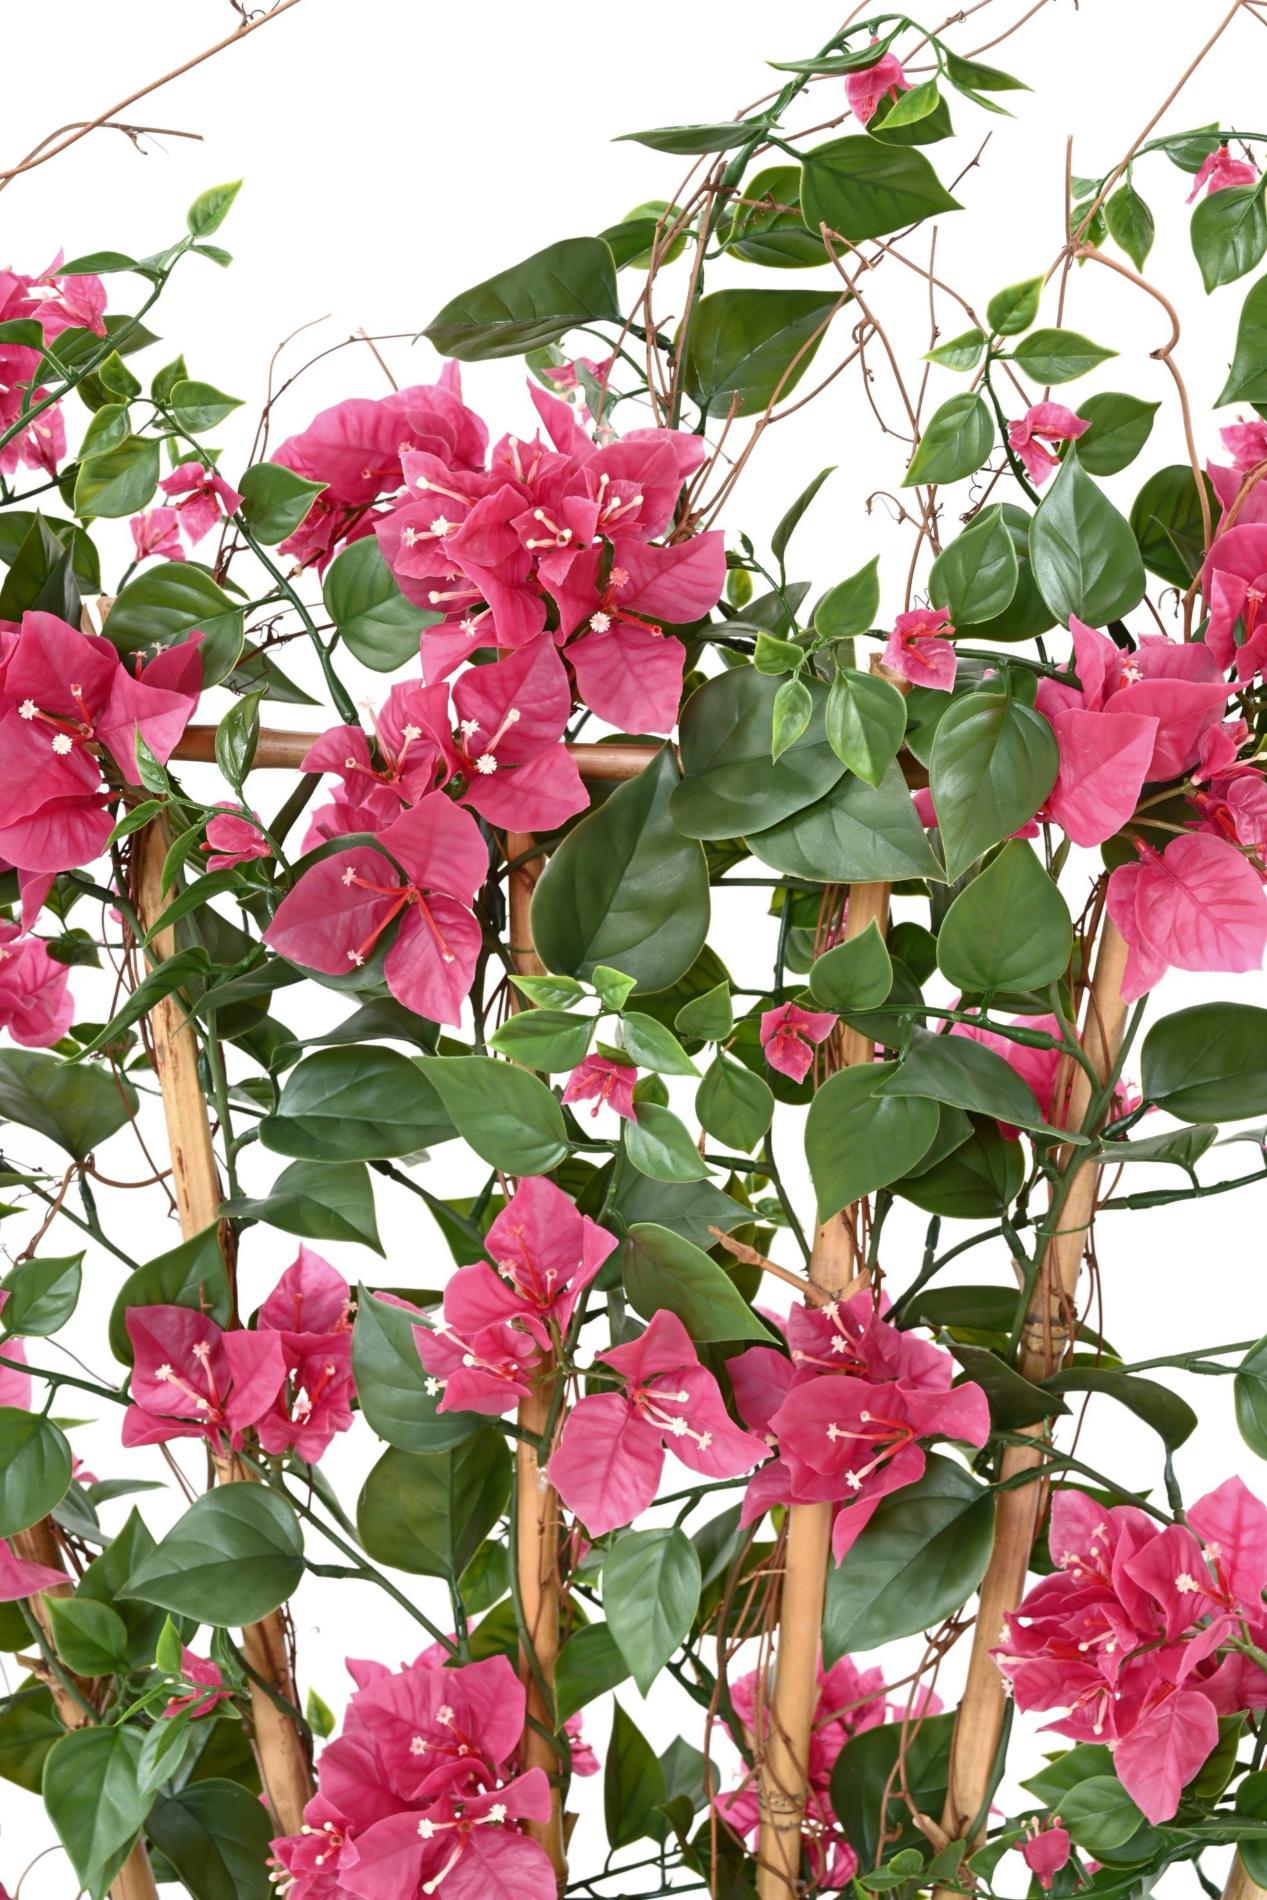 Palissade artificielle fleurie Bougainvillier anti-UV - plante d'extérieur - H.140cm fuchsia